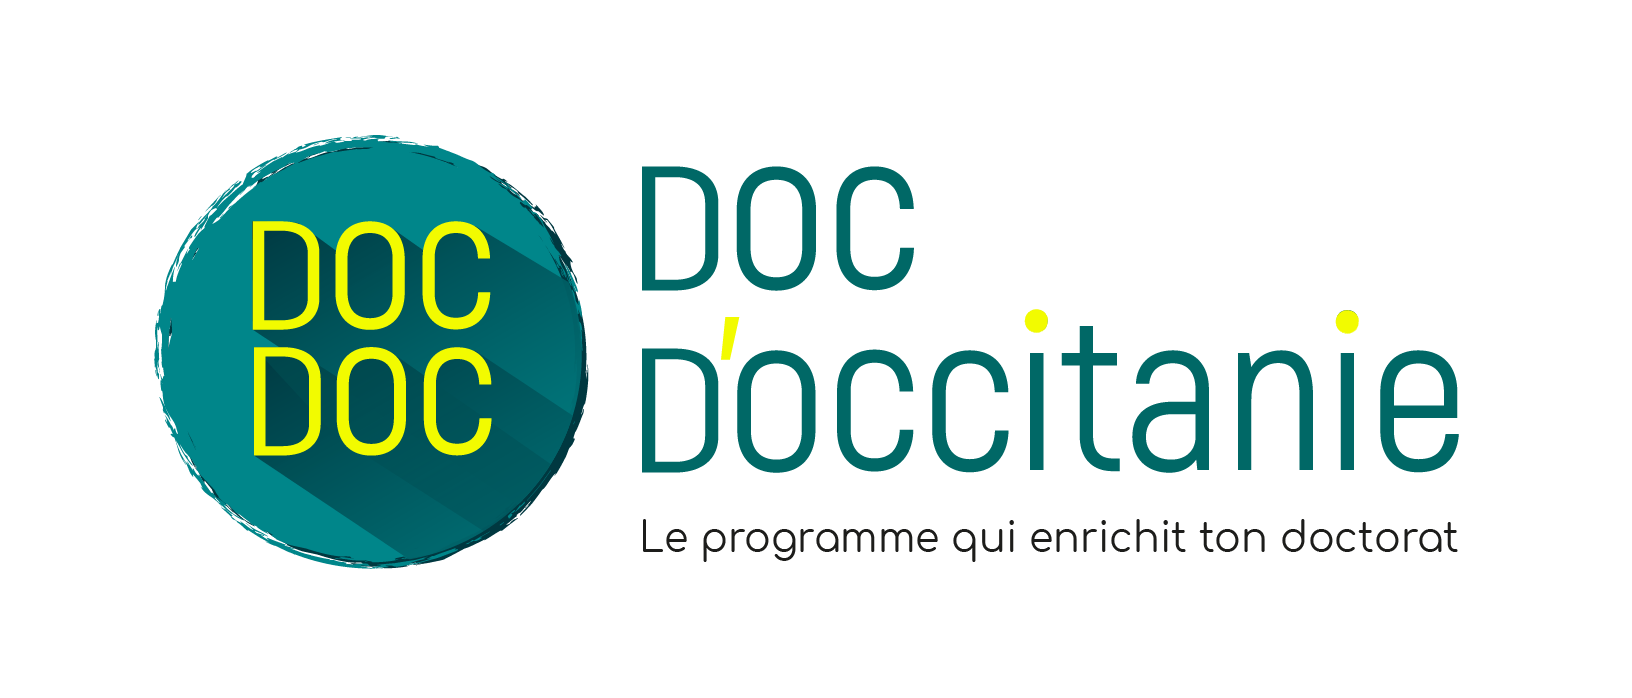 Logo Doc d'Occitanie - le programme qui enrichit tont doctorat